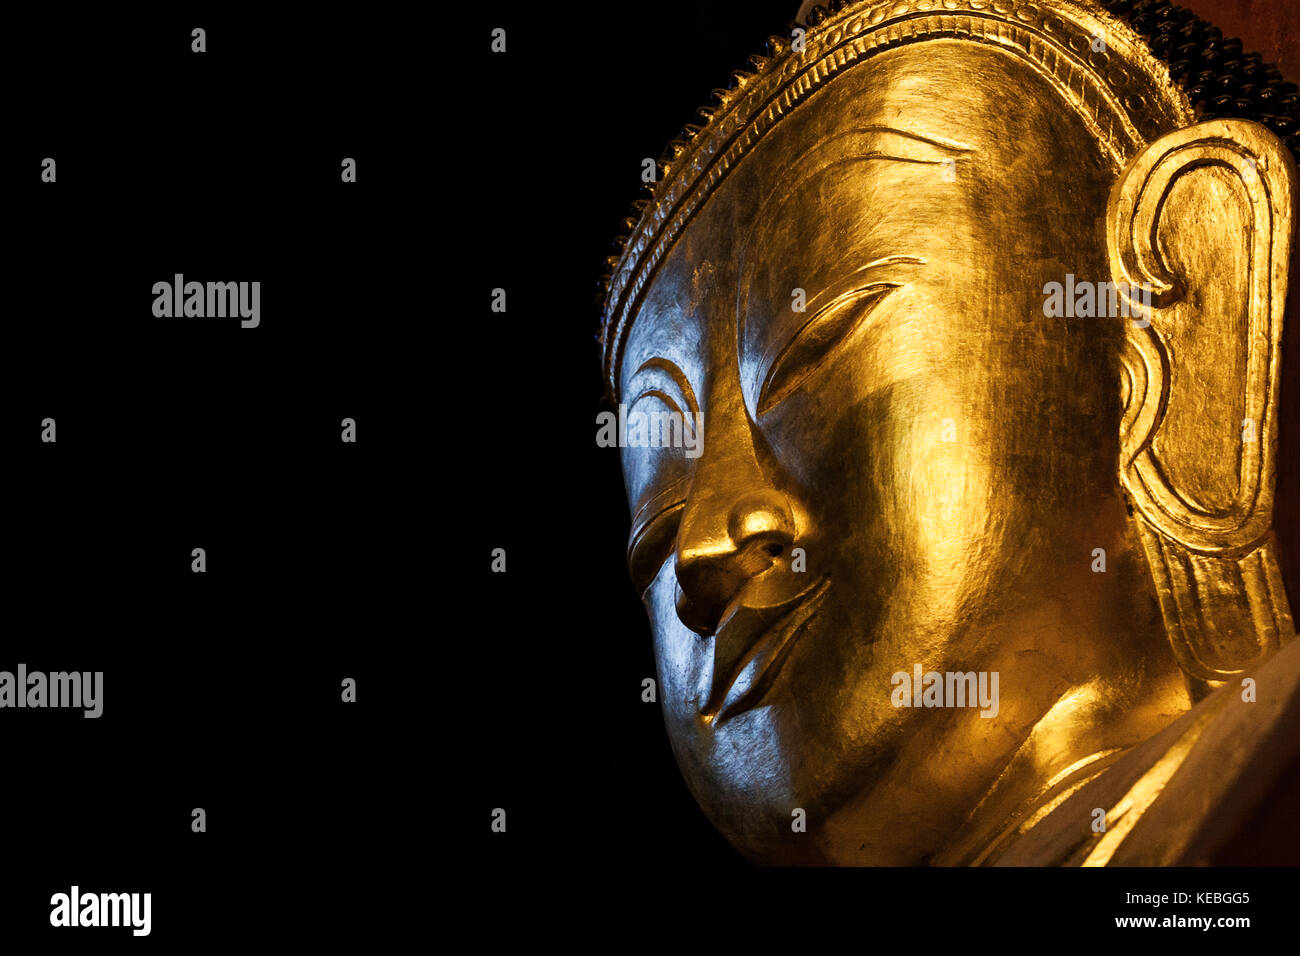 Tête de Bouddha en or isolé sur fond noir. belle grosse tête de Bouddha Statue de Bouddha dans le cadre de la pratique de la pleine conscience à un cave temple en thailande Banque D'Images